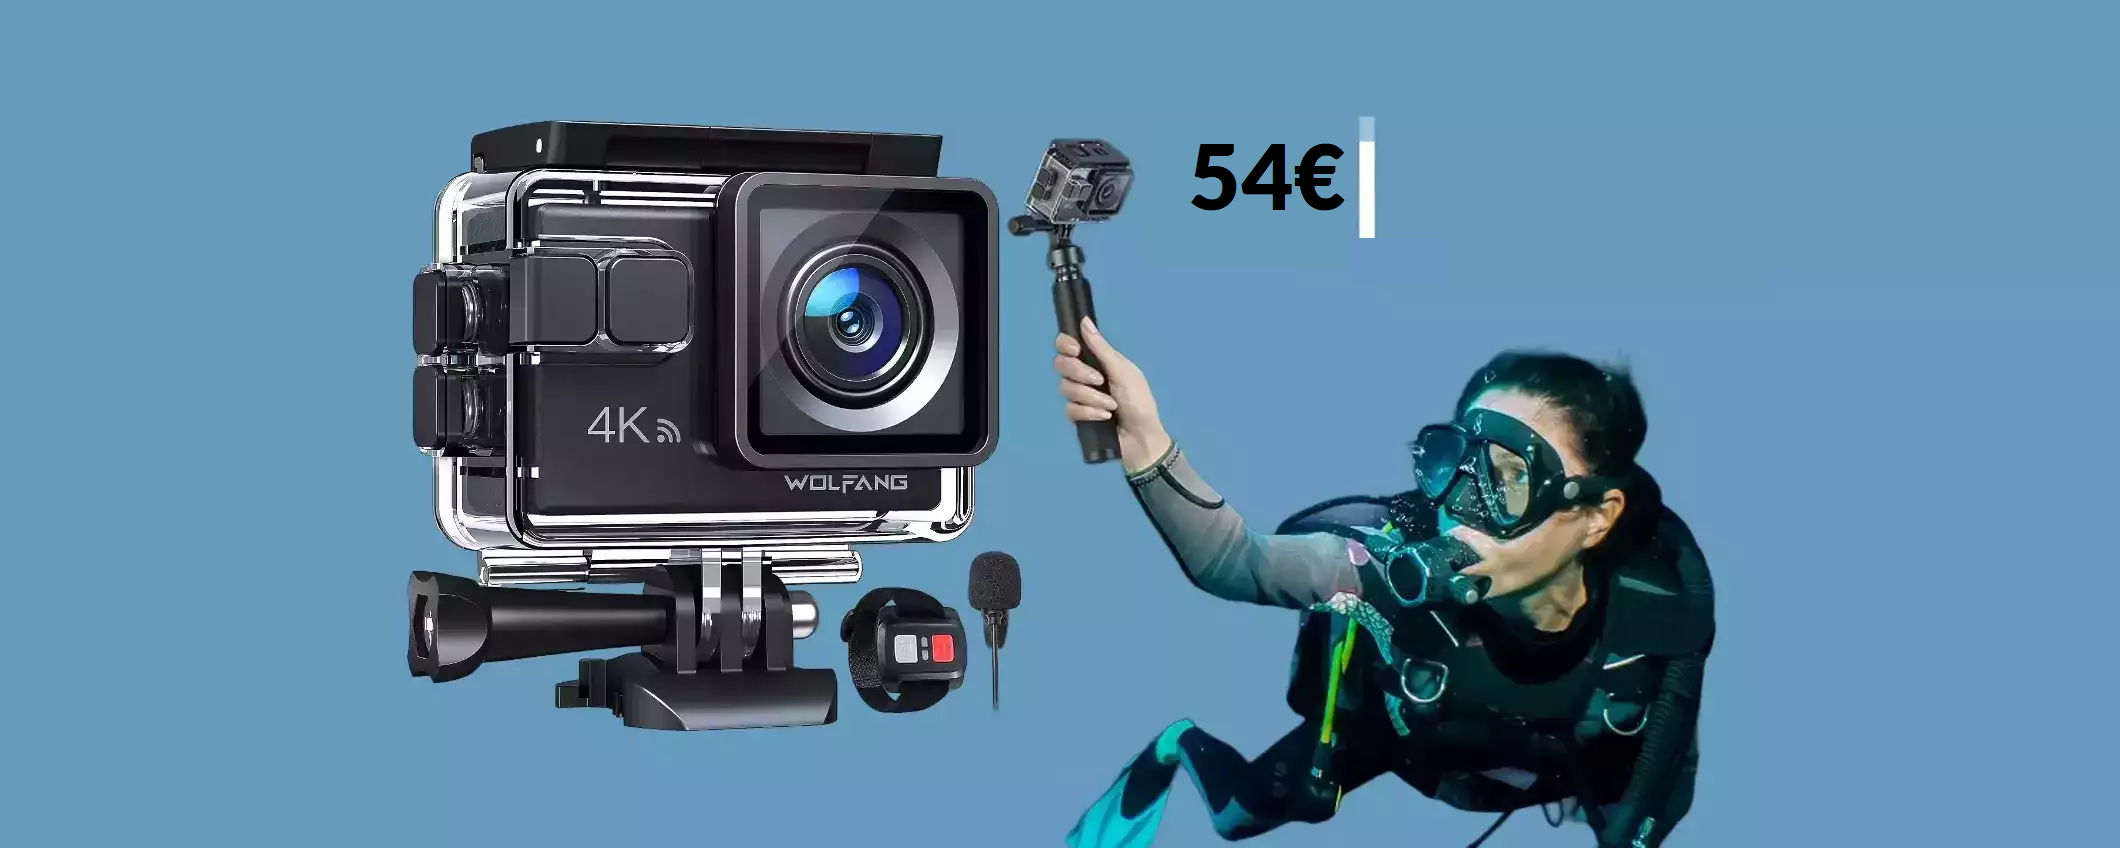 Action cam 4K a soli 54€ col COUPON: foto e video STRABILIANTI